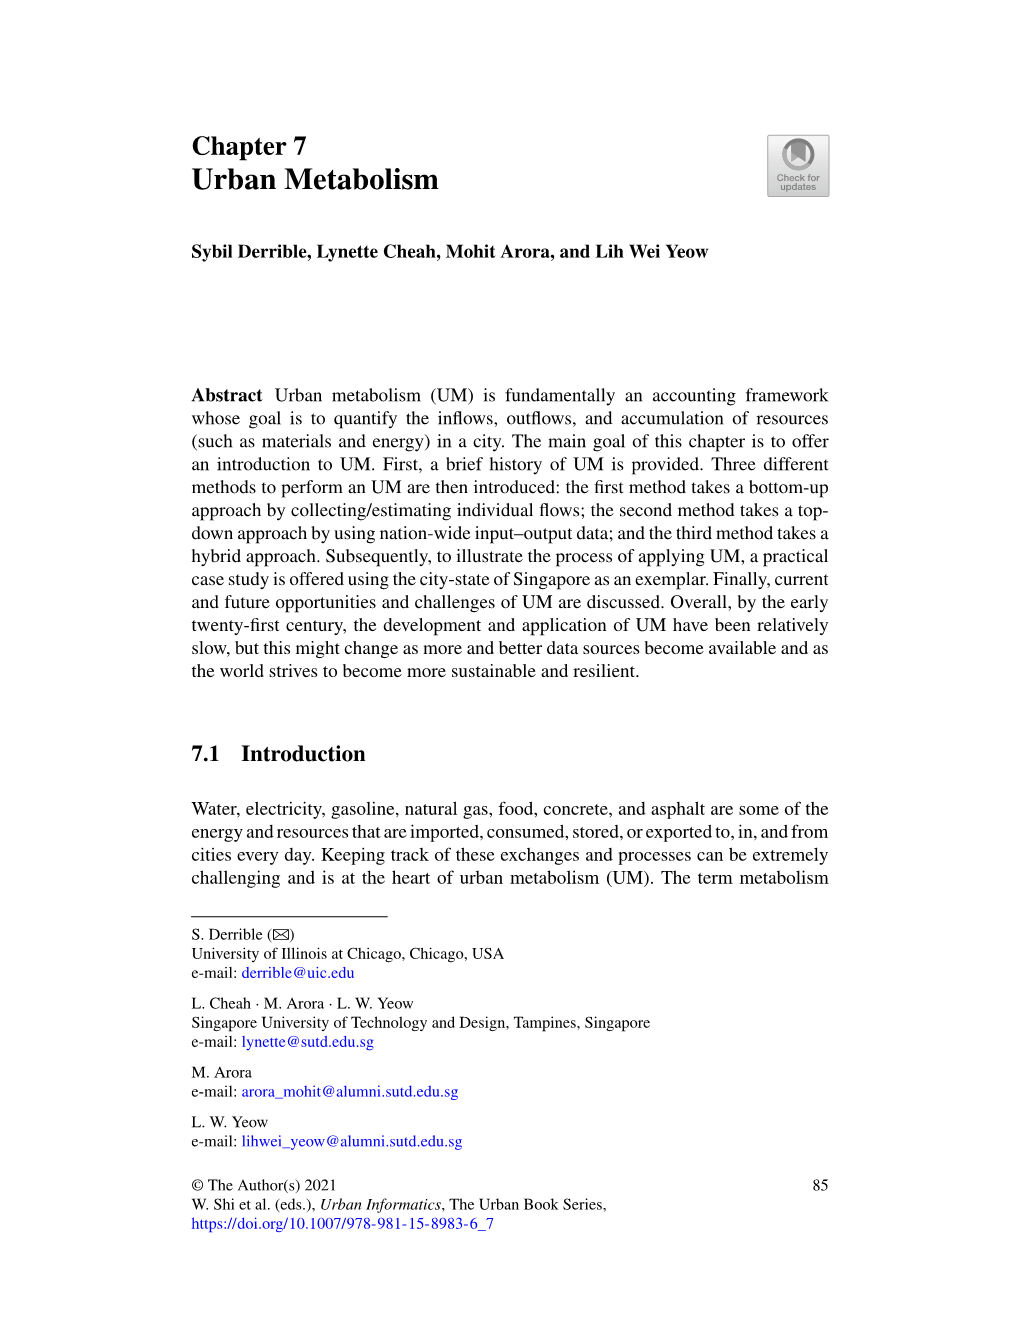 Chapter 7 Urban Metabolism